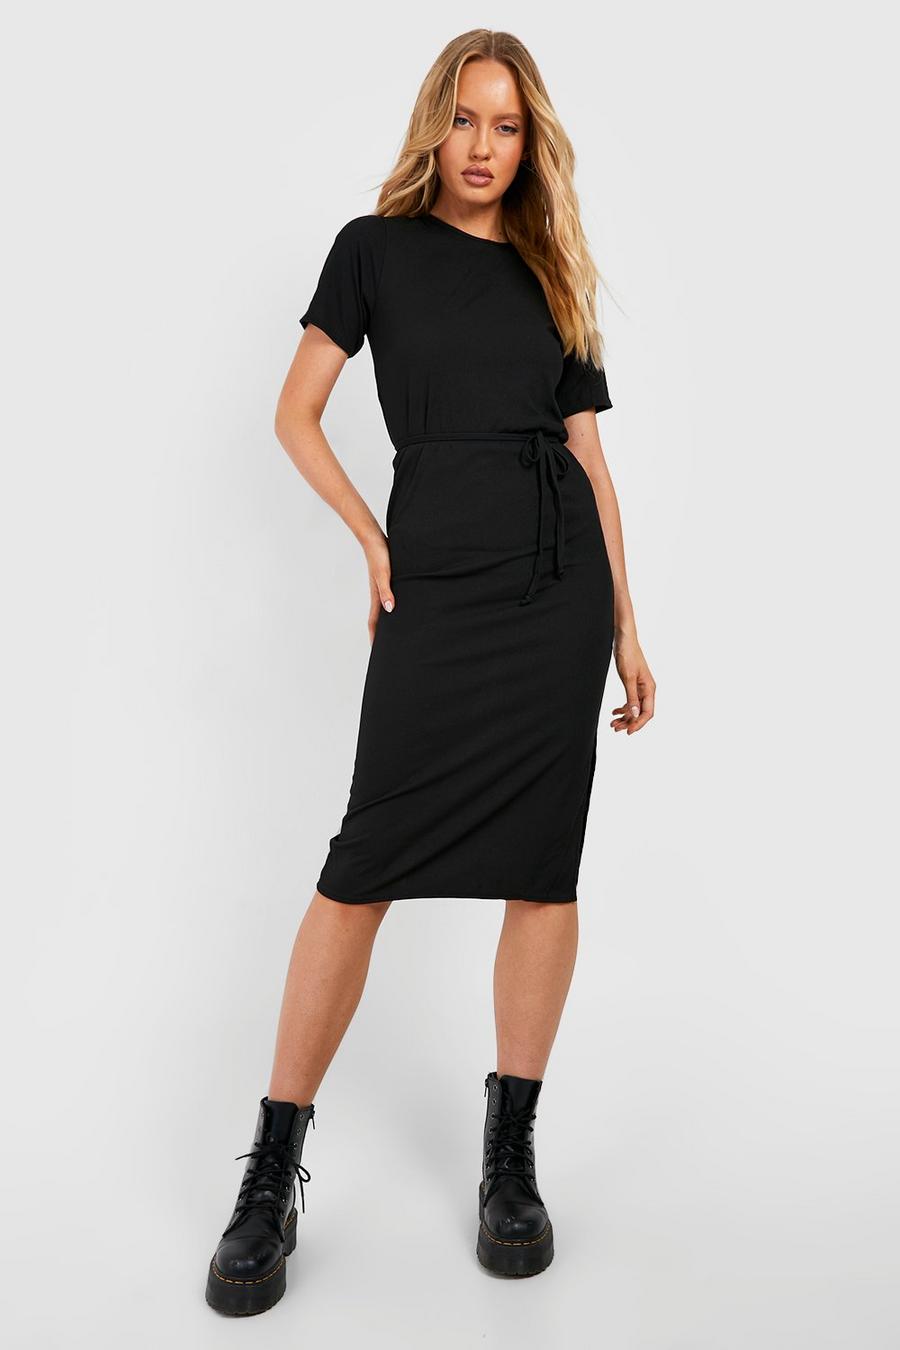 שחור שמלת טישרט באריגת ריב עם חגורה ושסע בצד לנשים גבוהות image number 1